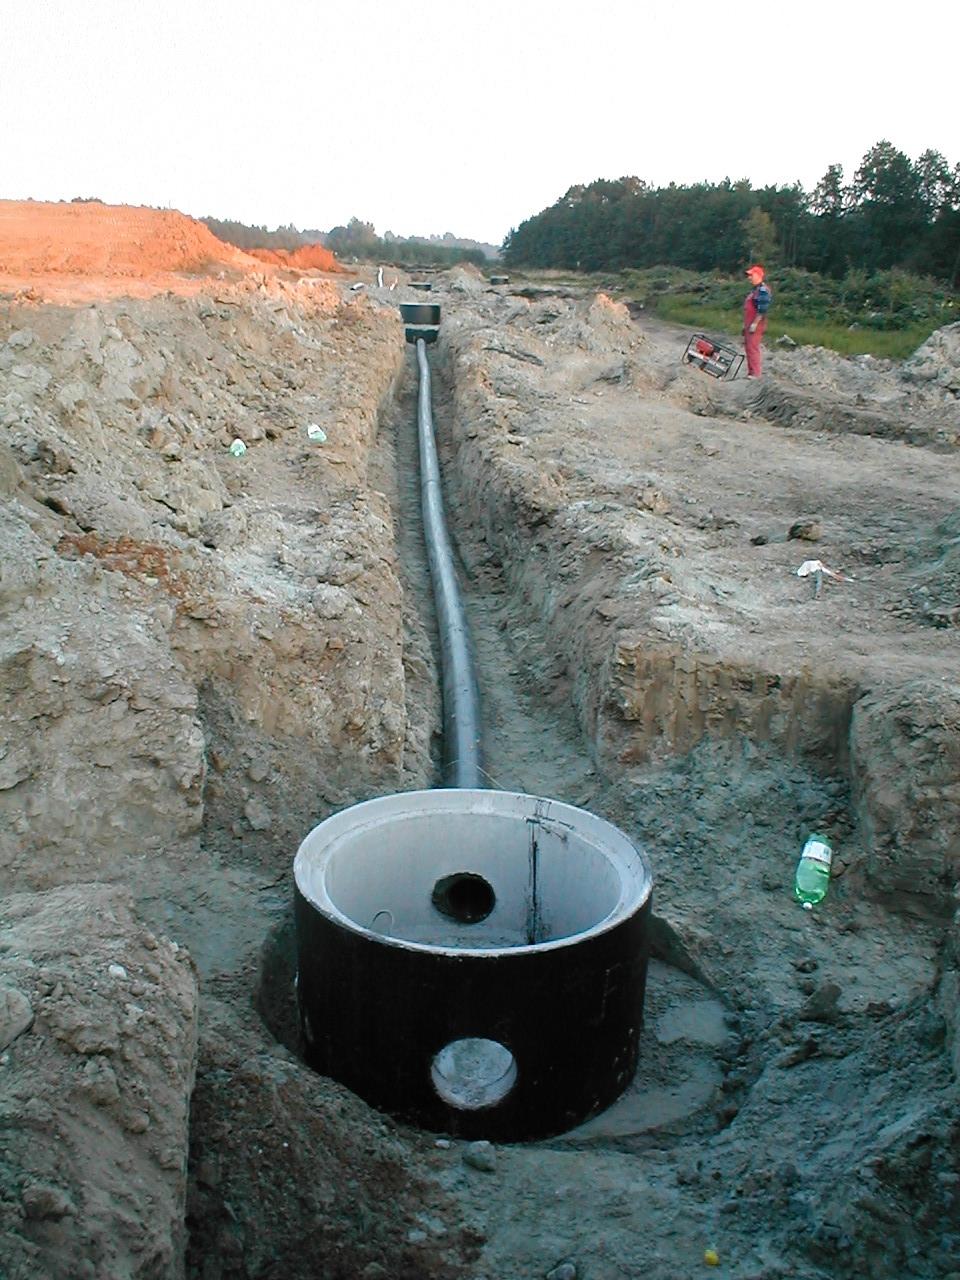 Budowa kanalizacji sanitarnej w rej. ul. Wspólnej W 2008 r zainteresowani właściciele działek w rej ul. Wspólnej przekazali darowiznę celową na rzecz Gminy Brzeszcze w wysokości 4.